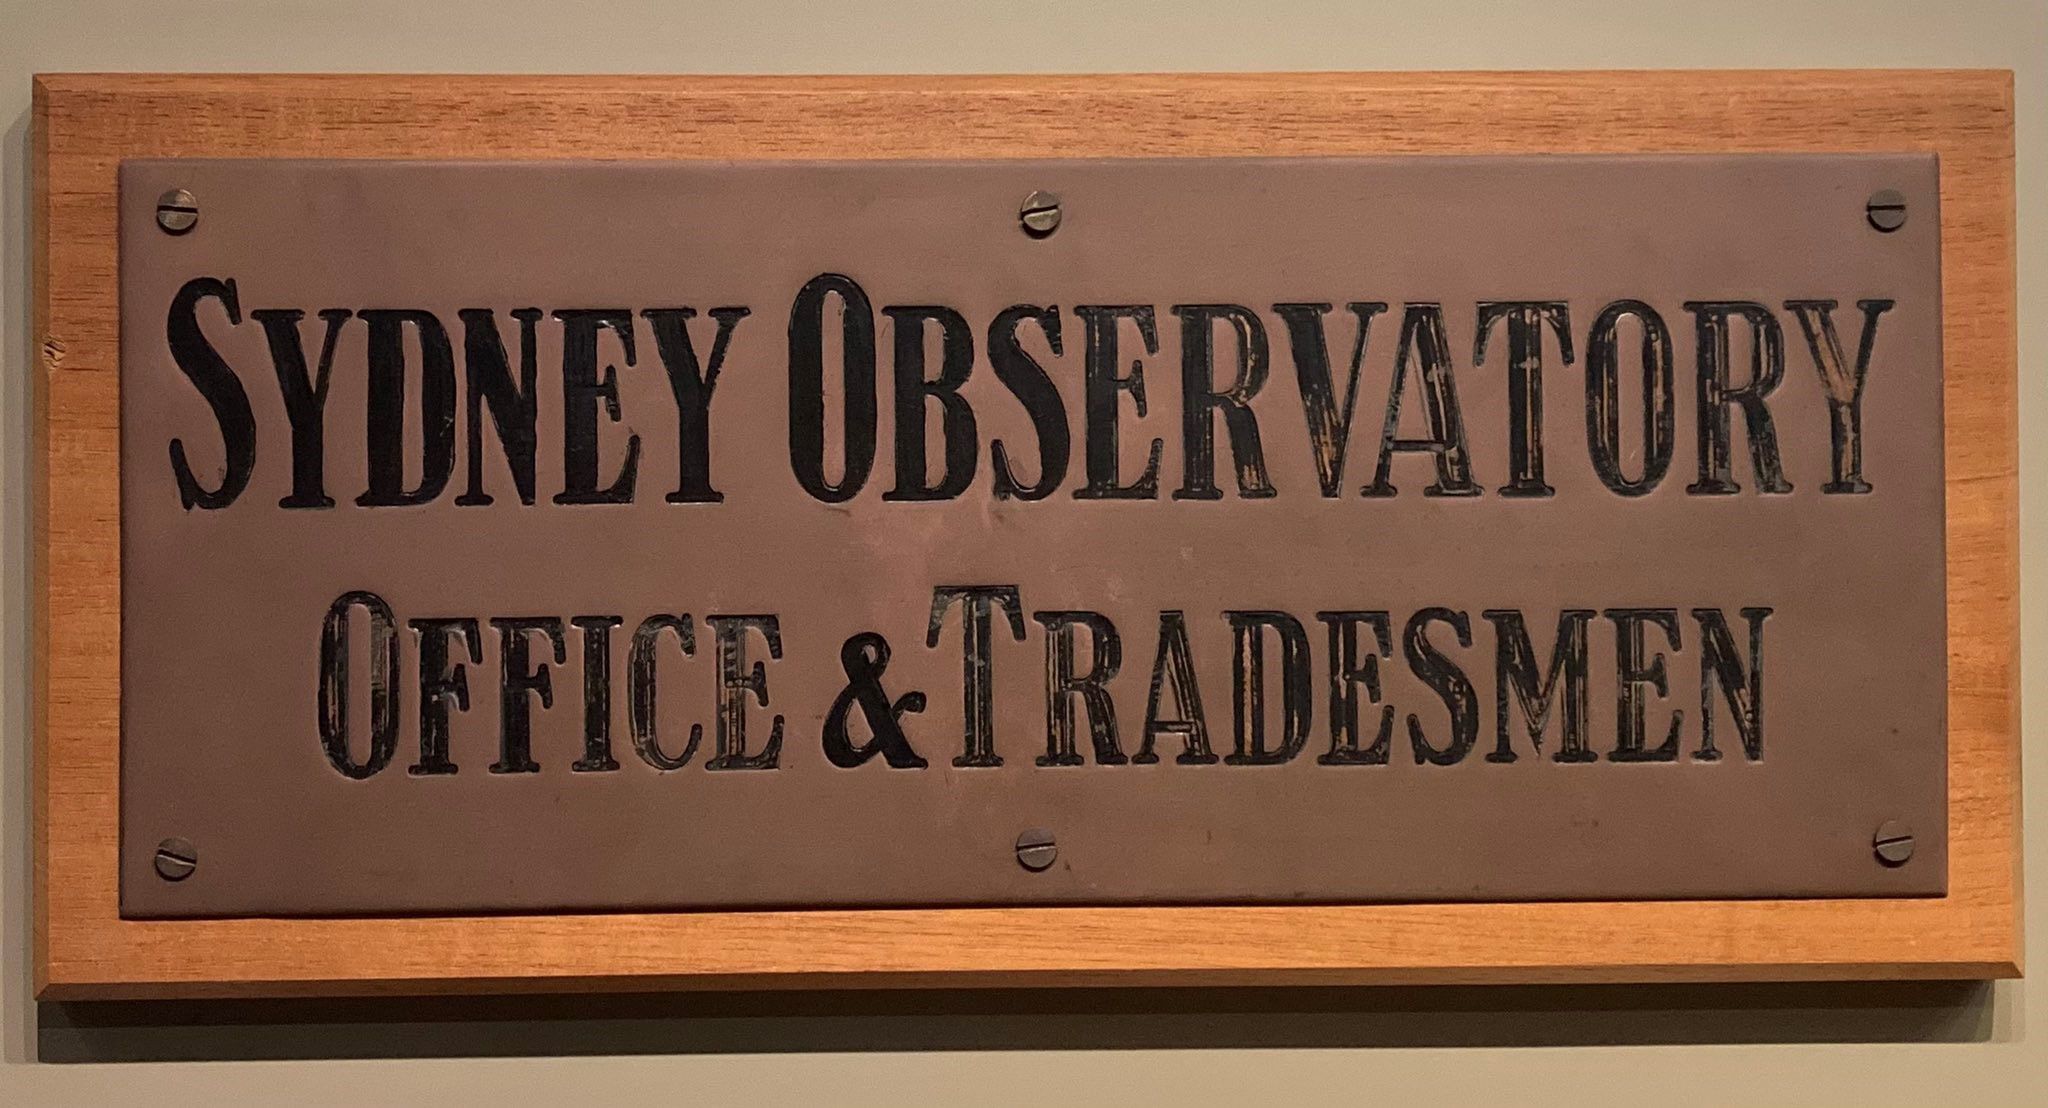 Brass entrance plate "Sydney Observatory Office & Tradesmen"